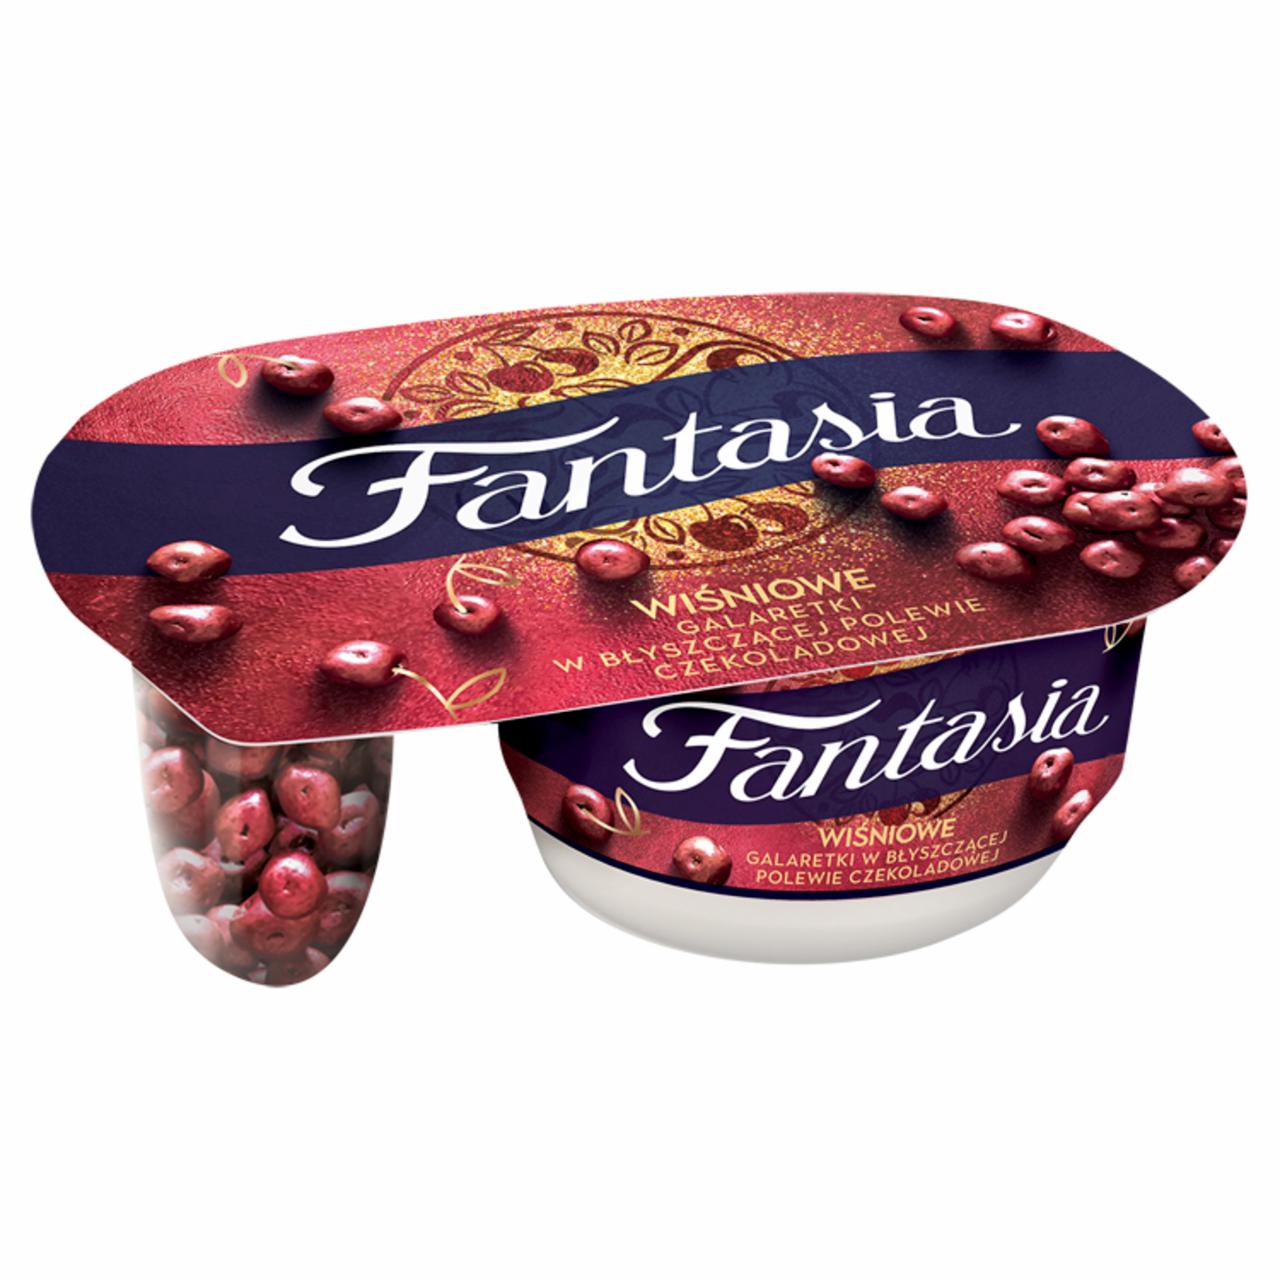 Zdjęcia - Fantasia Jogurt kremowy wiśniowe galaretki w błyszczącej polewie czekoladowej 105 g